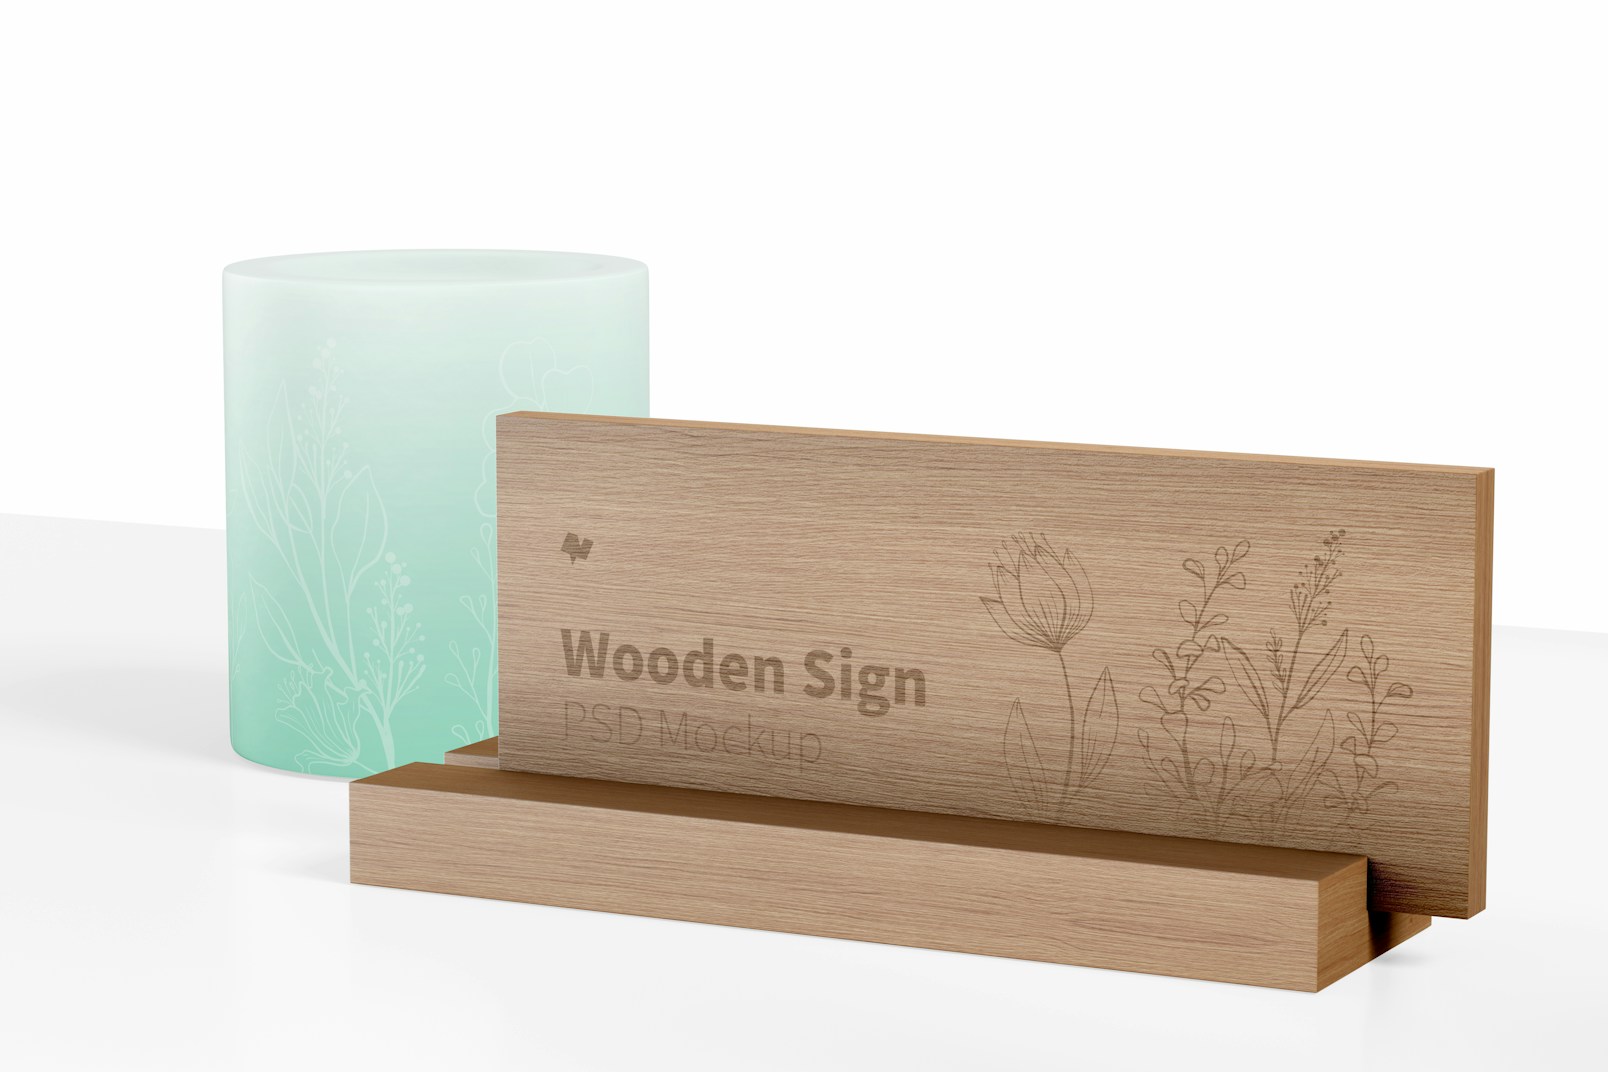 Wooden Sign Mockup